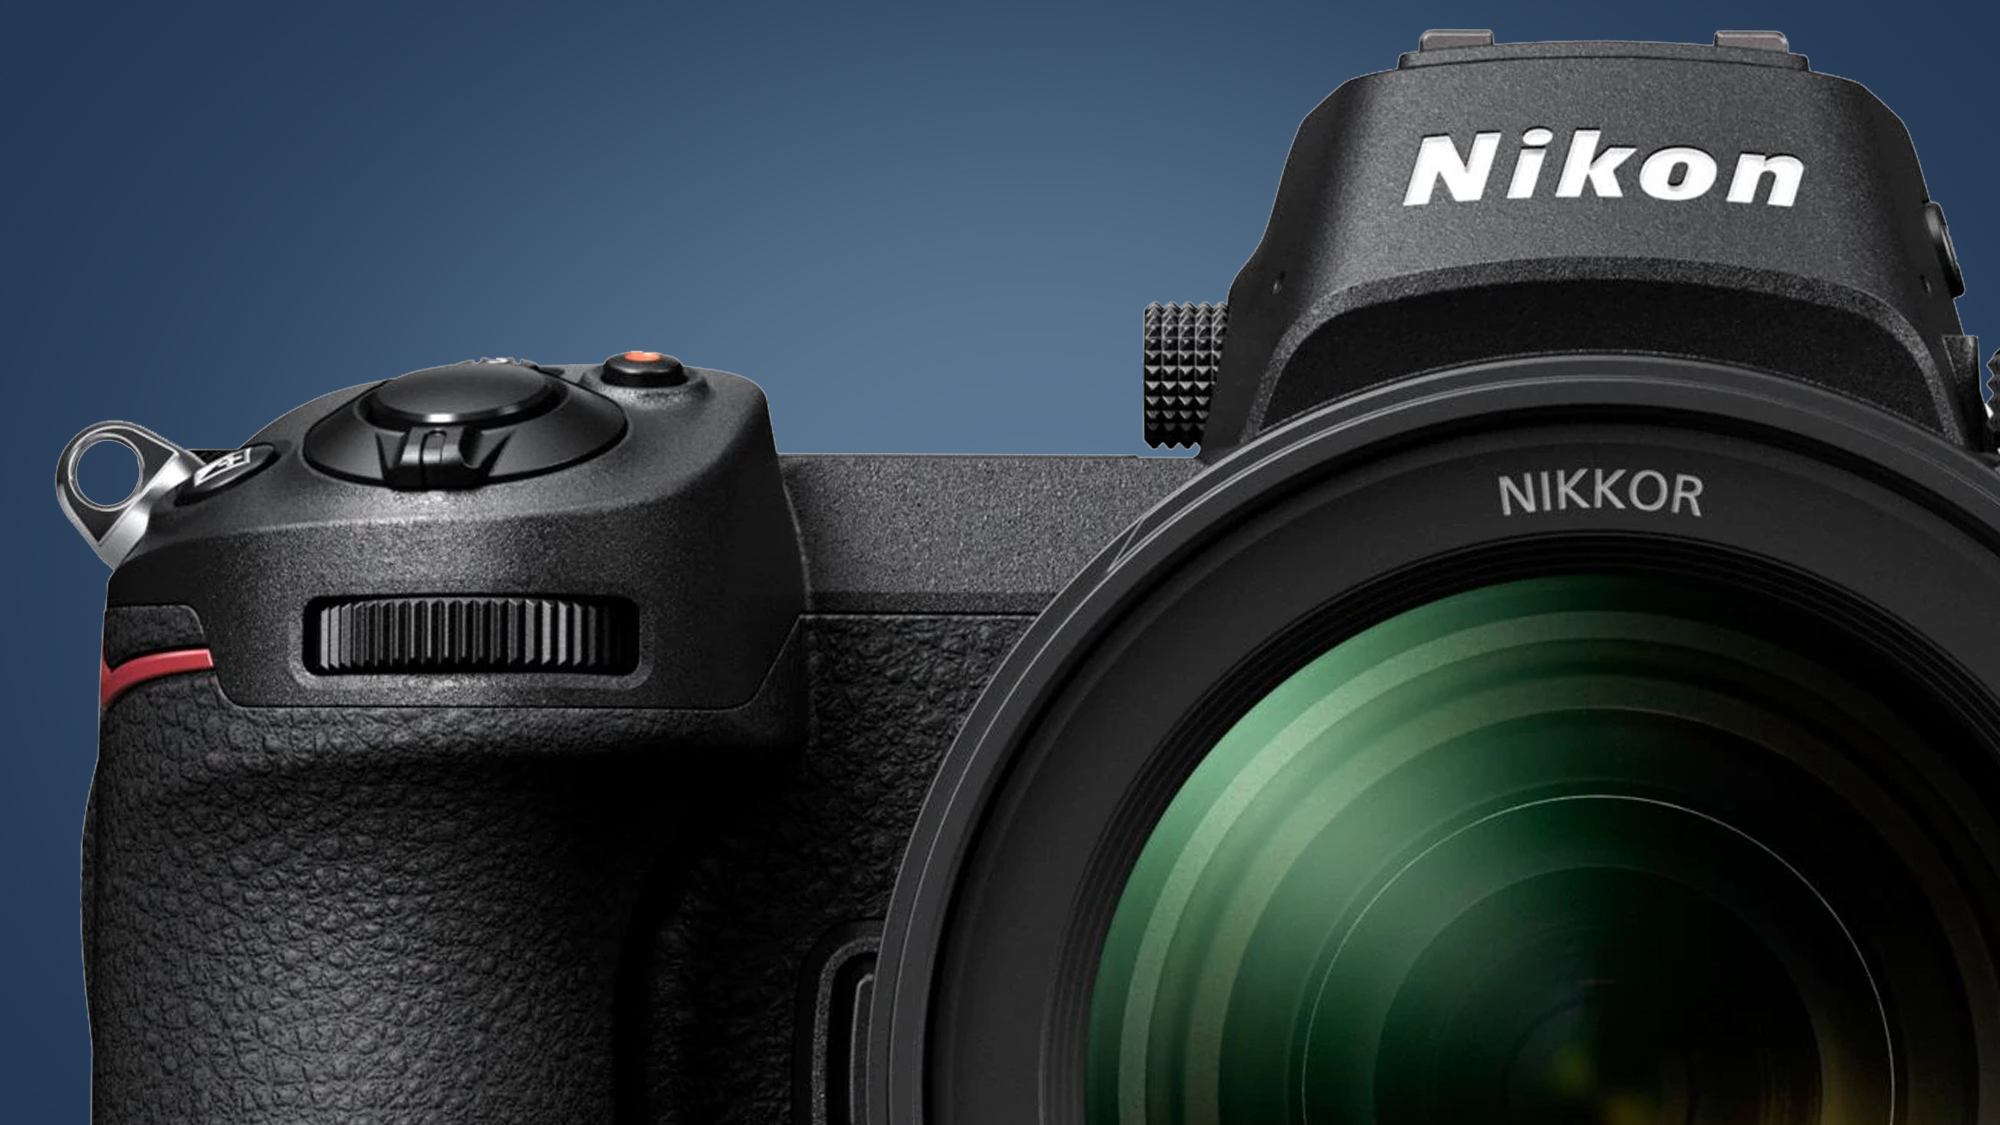 Les Nikon Z5 et Z30 lancés cet été ? Que cachent ces nouveaux appareils